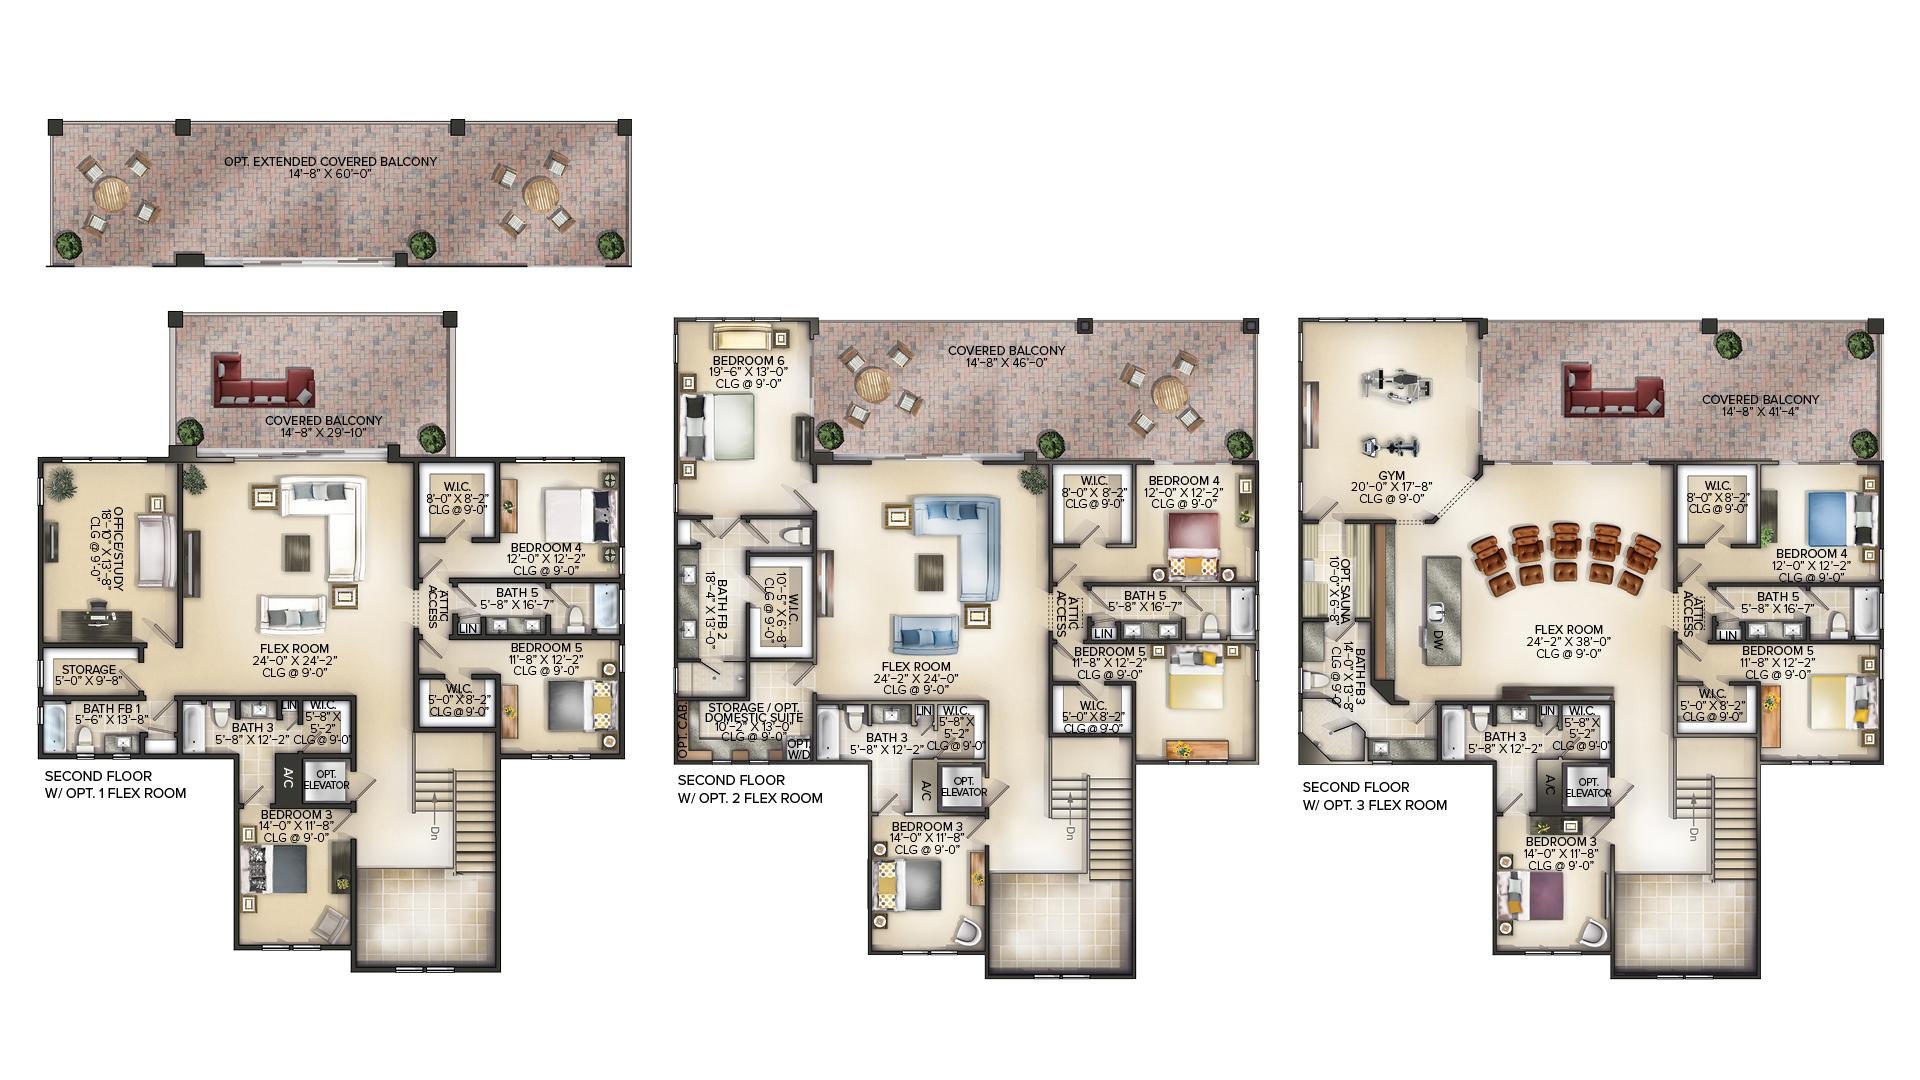 Floor plan for second floor of home